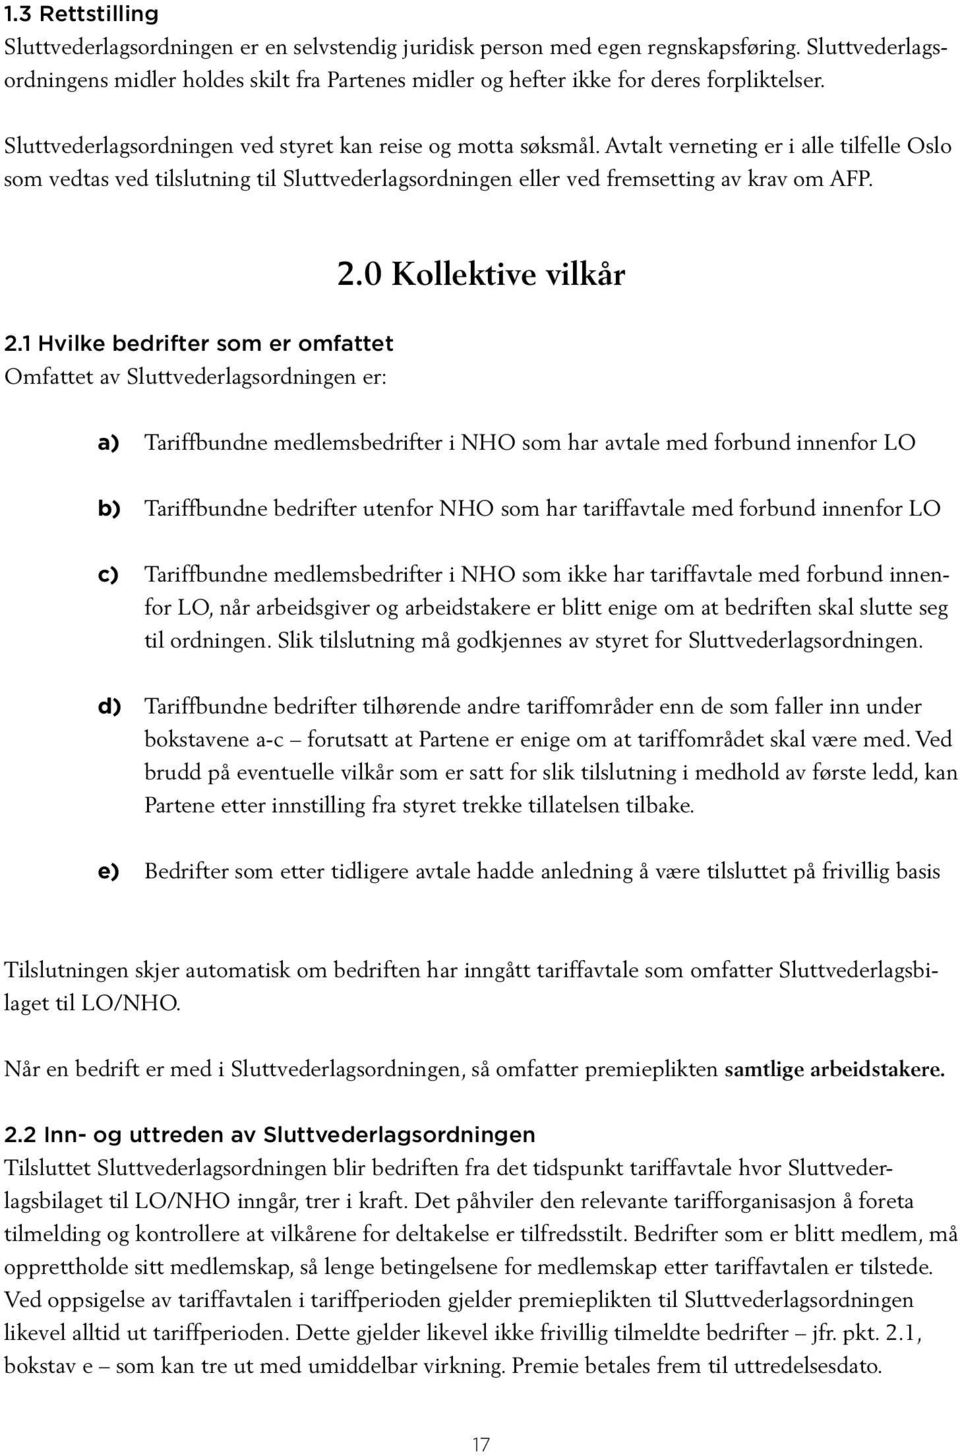 Avtalt verneting er i alle tilfelle Oslo som vedtas ved tilslutning til Sluttvederlagsordningen eller ved fremsetting av krav om AFP. 2.0 Kollektive vilkår 2.